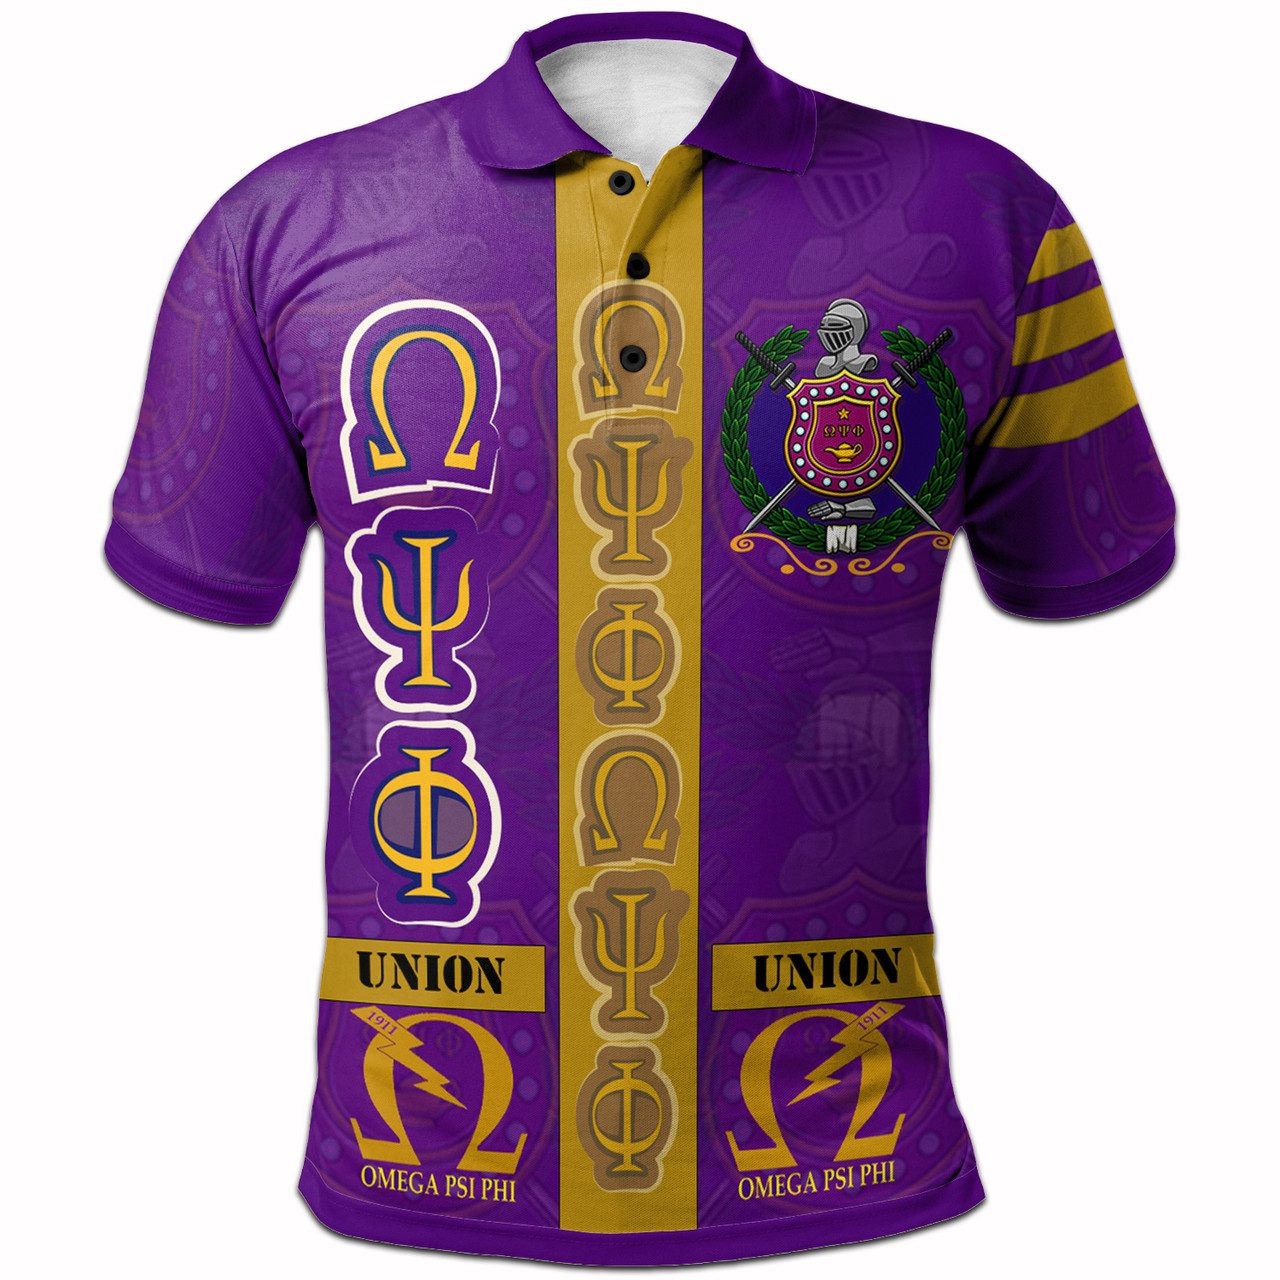 Omega Psi Phi Polo Shirt – Fraternity Pride Polo Shirt